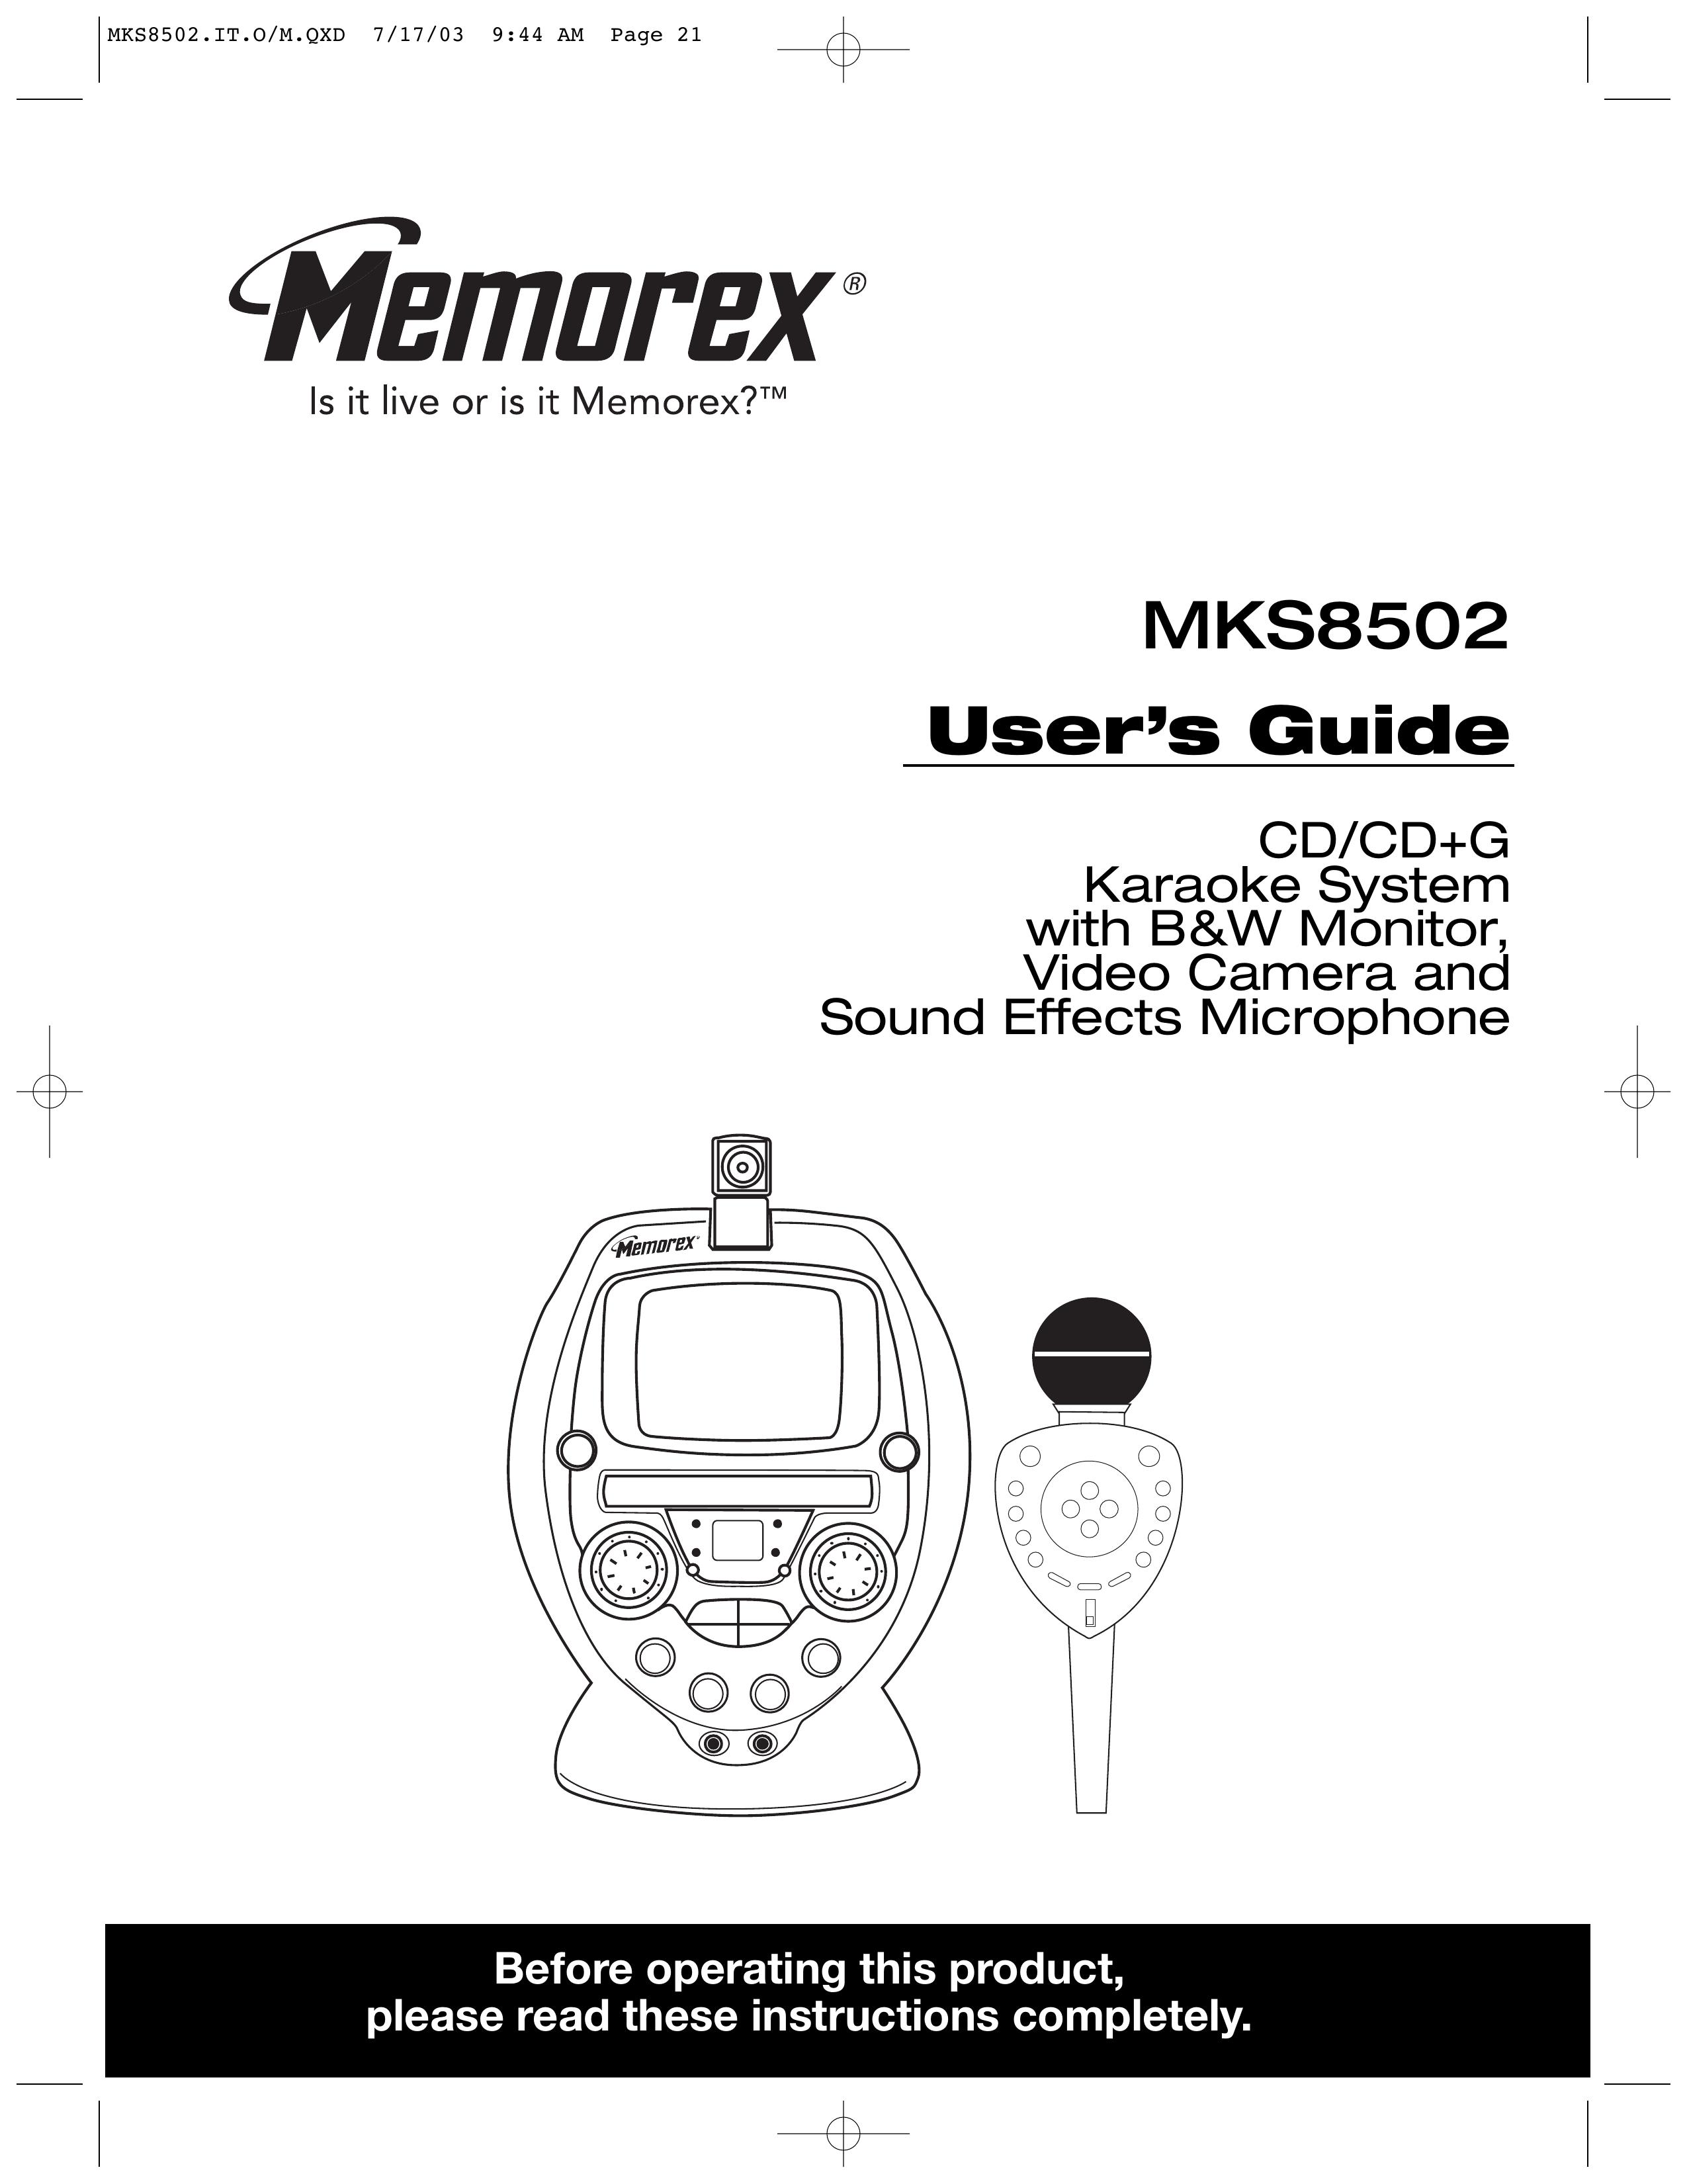 Memorex MKS8502 Karaoke Machine User Manual